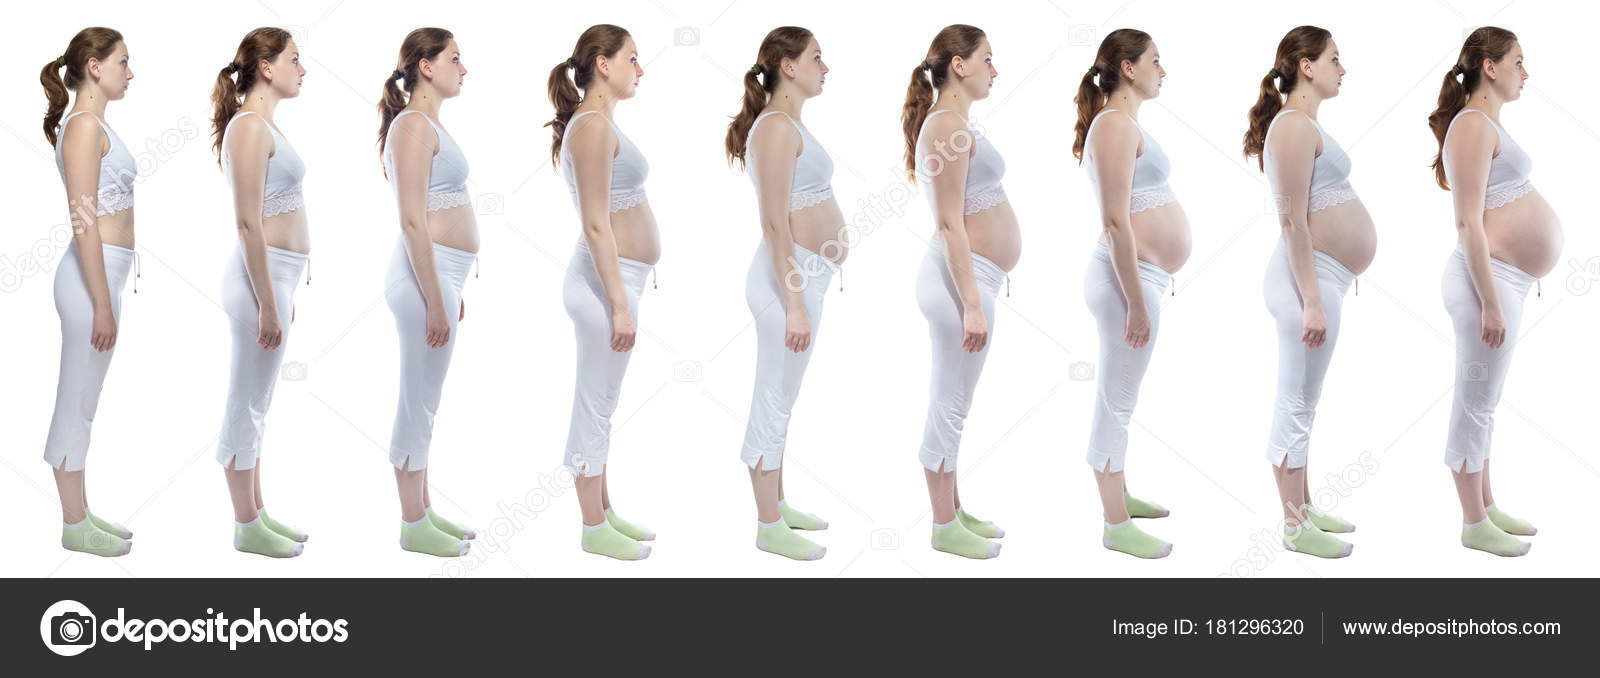 фото женской груди до беременности и во время беременности фото 107